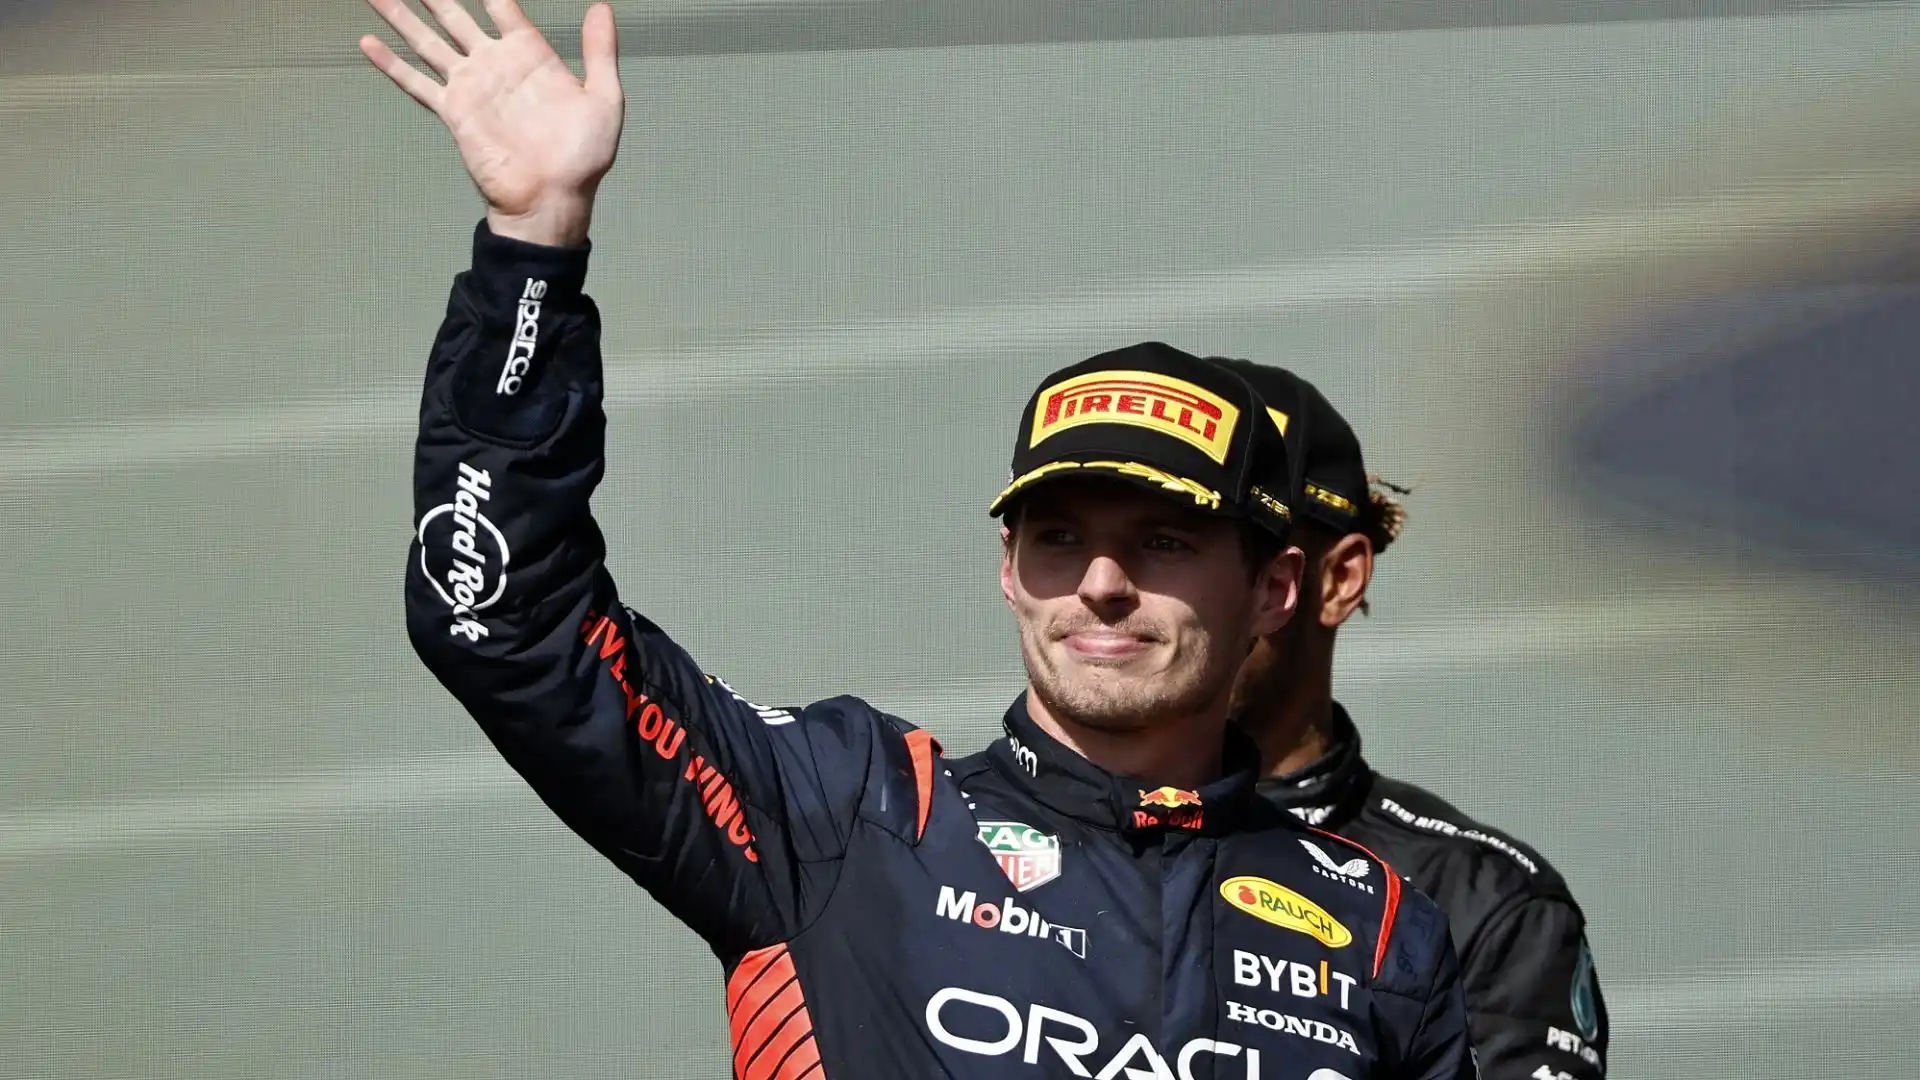 Verstappen dopo la premiazione ha sorriso: "Non li trovo irritanti"